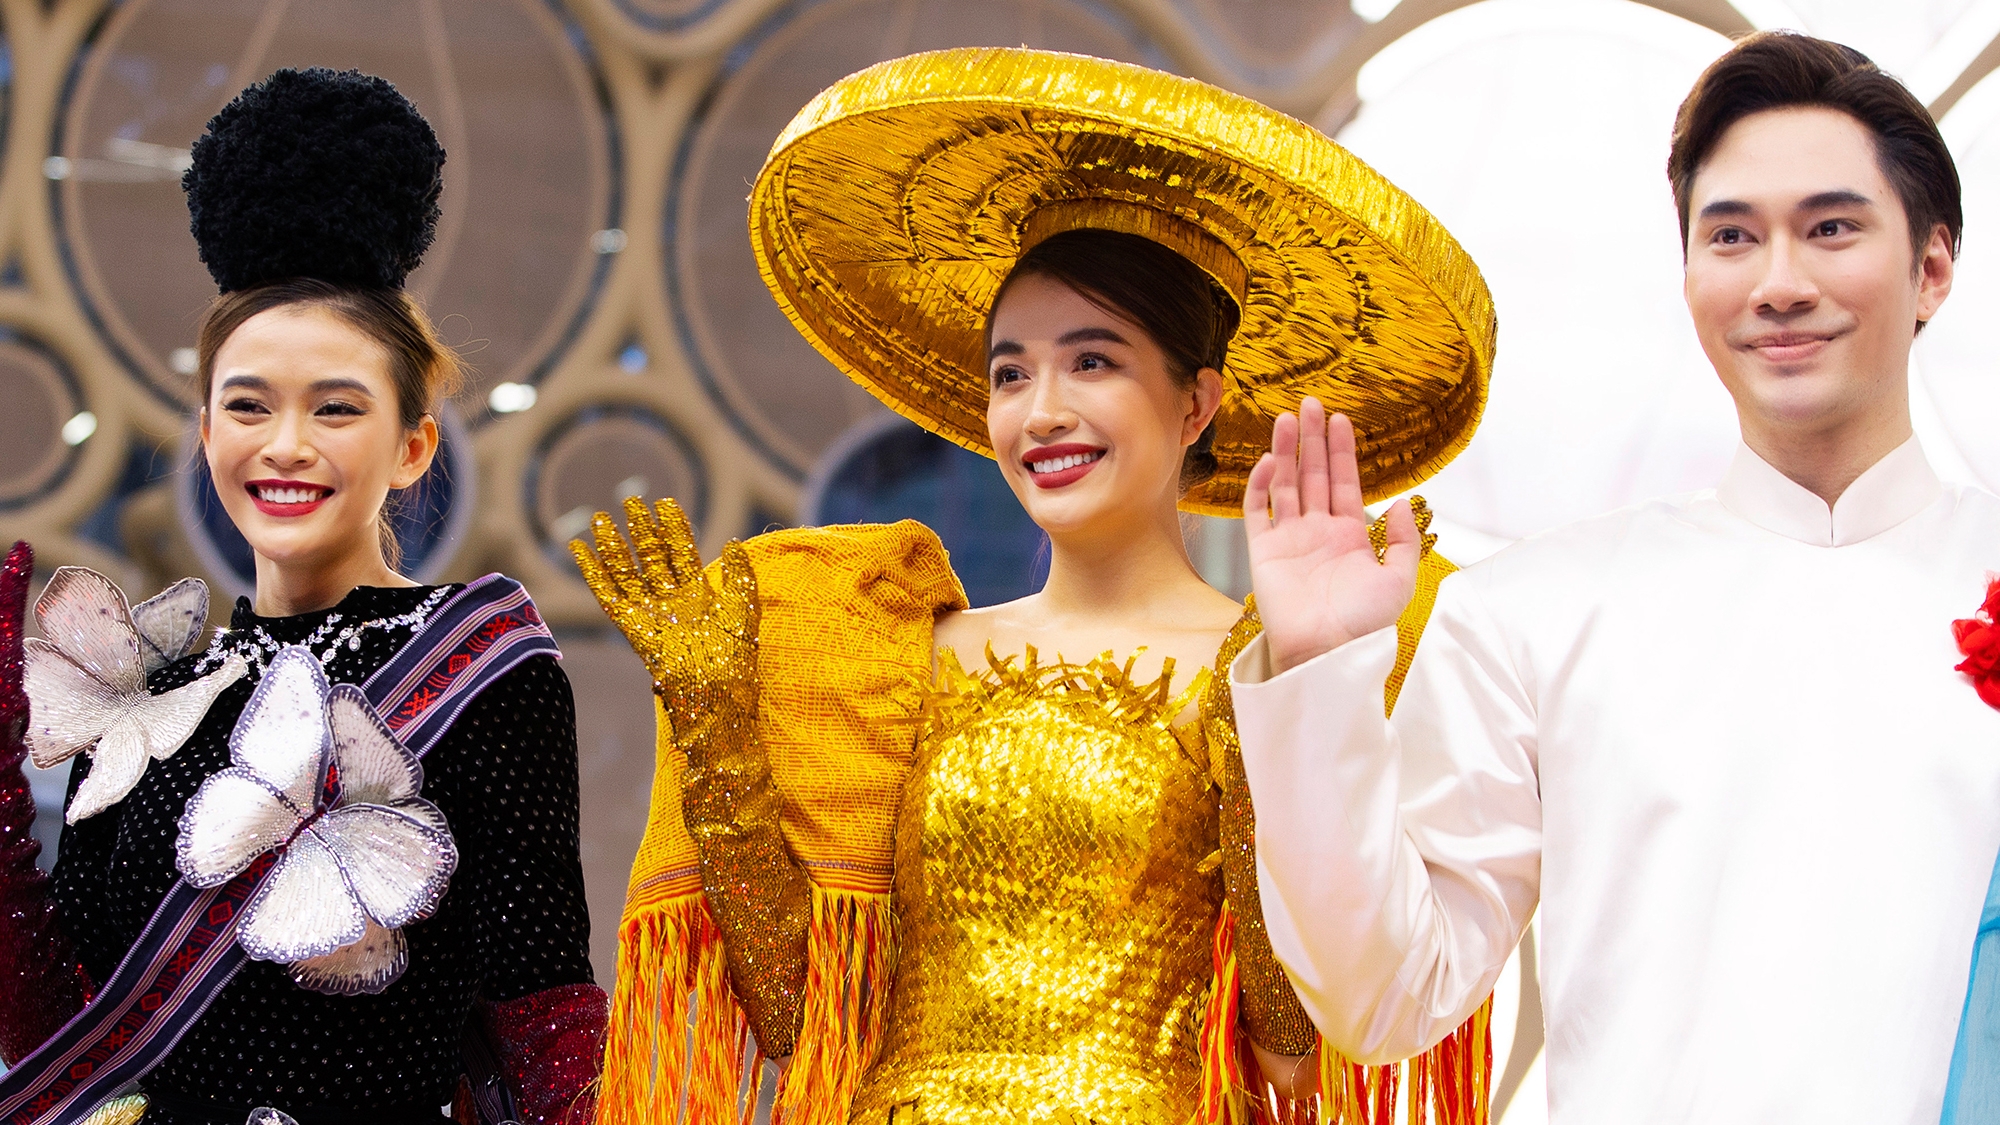 Lý Quí Khánh đưa văn hóa, lịch sử lên thời trang quảng bá quốc tế